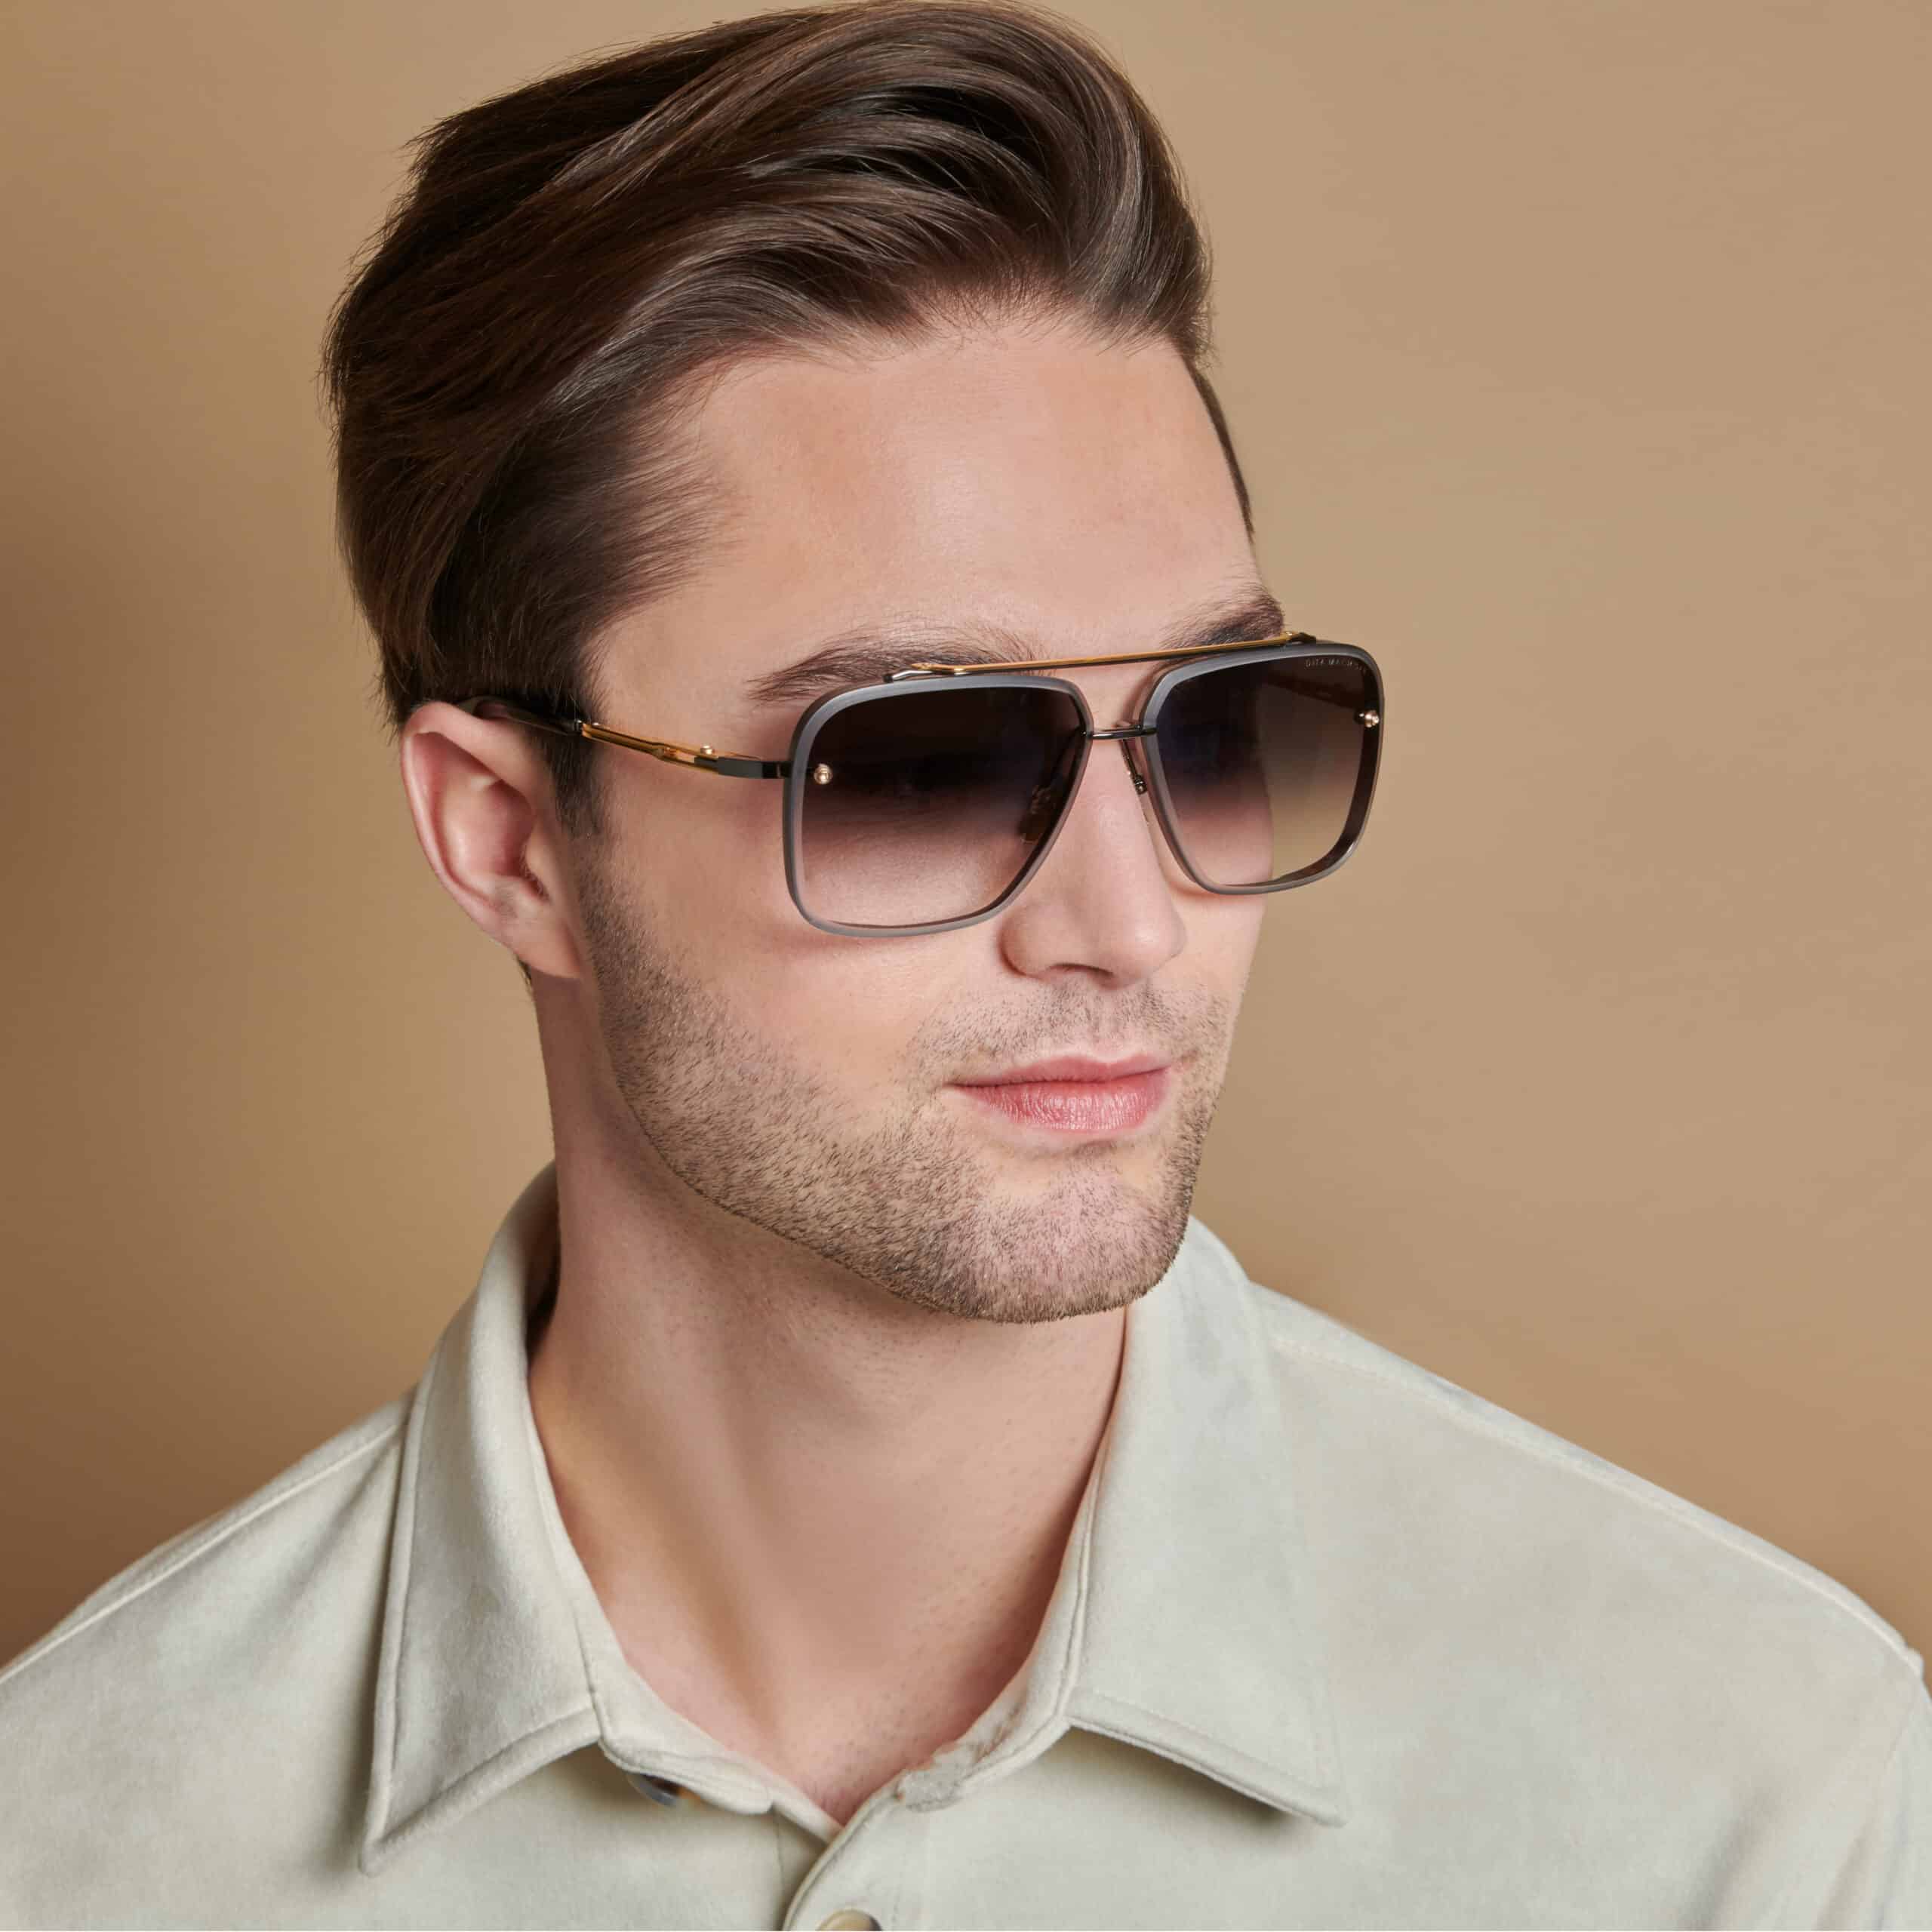 Specialist alarm Bijwerken Hippe zonnebrillen voor hem en haar - ruim merkaanbod